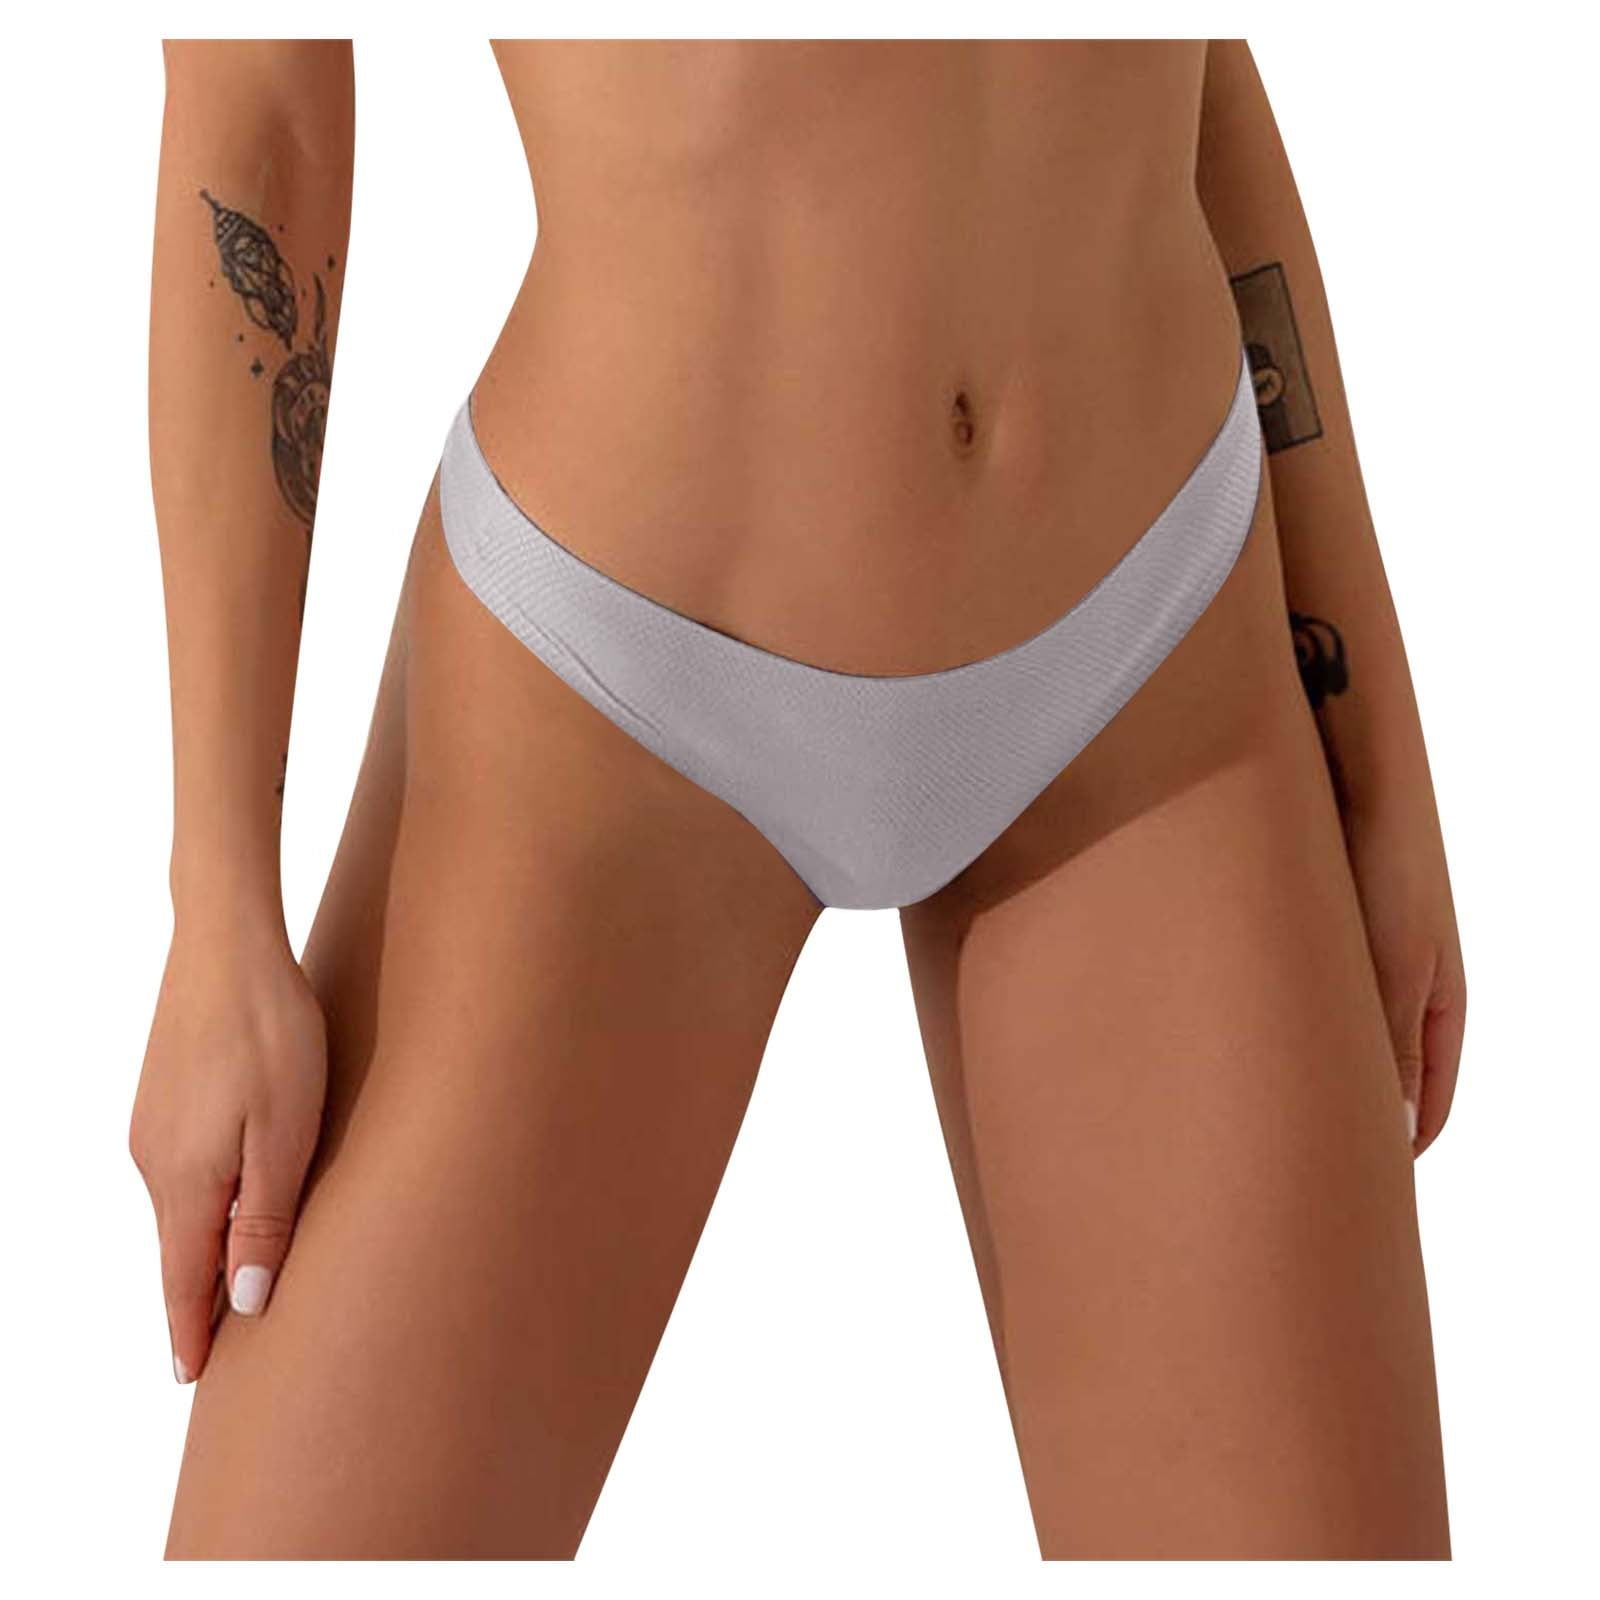 Qcmgmg Cheeky Underwear Stretch Tummy Control G String Thong Soft